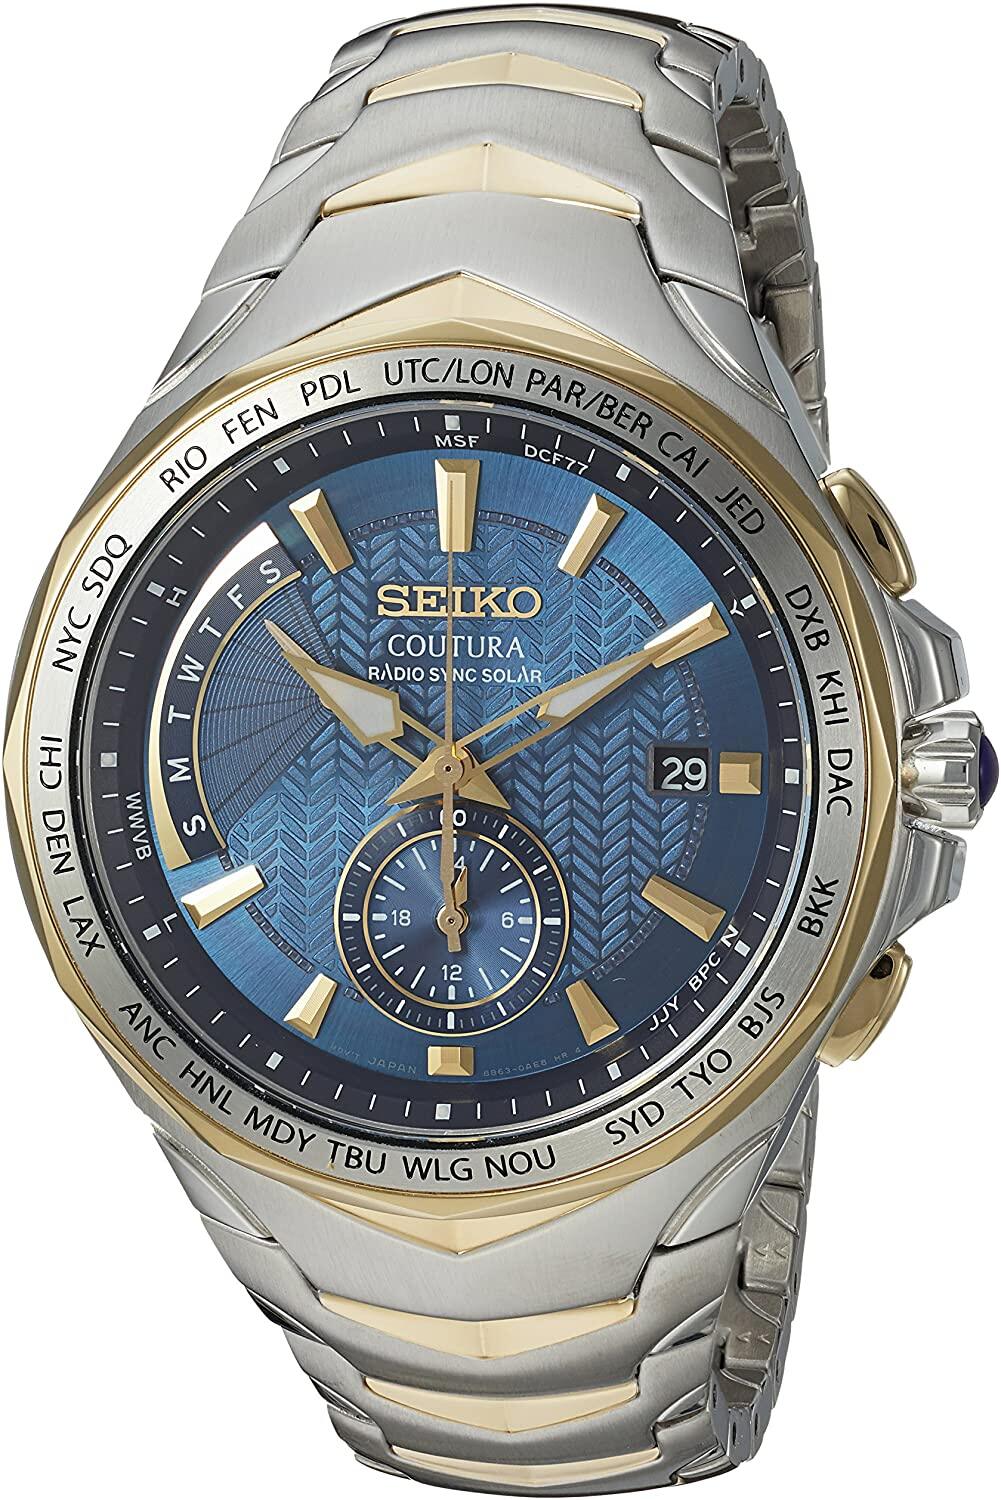 Đồng hồ Seiko cổ sẵn sàng (SEIKO SSG020 Watch) Seiko SSG020 COUTURA Analog  Display Japanese Quartz Two Tone Watch [Hộp & Sách hướng dẫn của Nhà sản  xuất + Người bán bảo